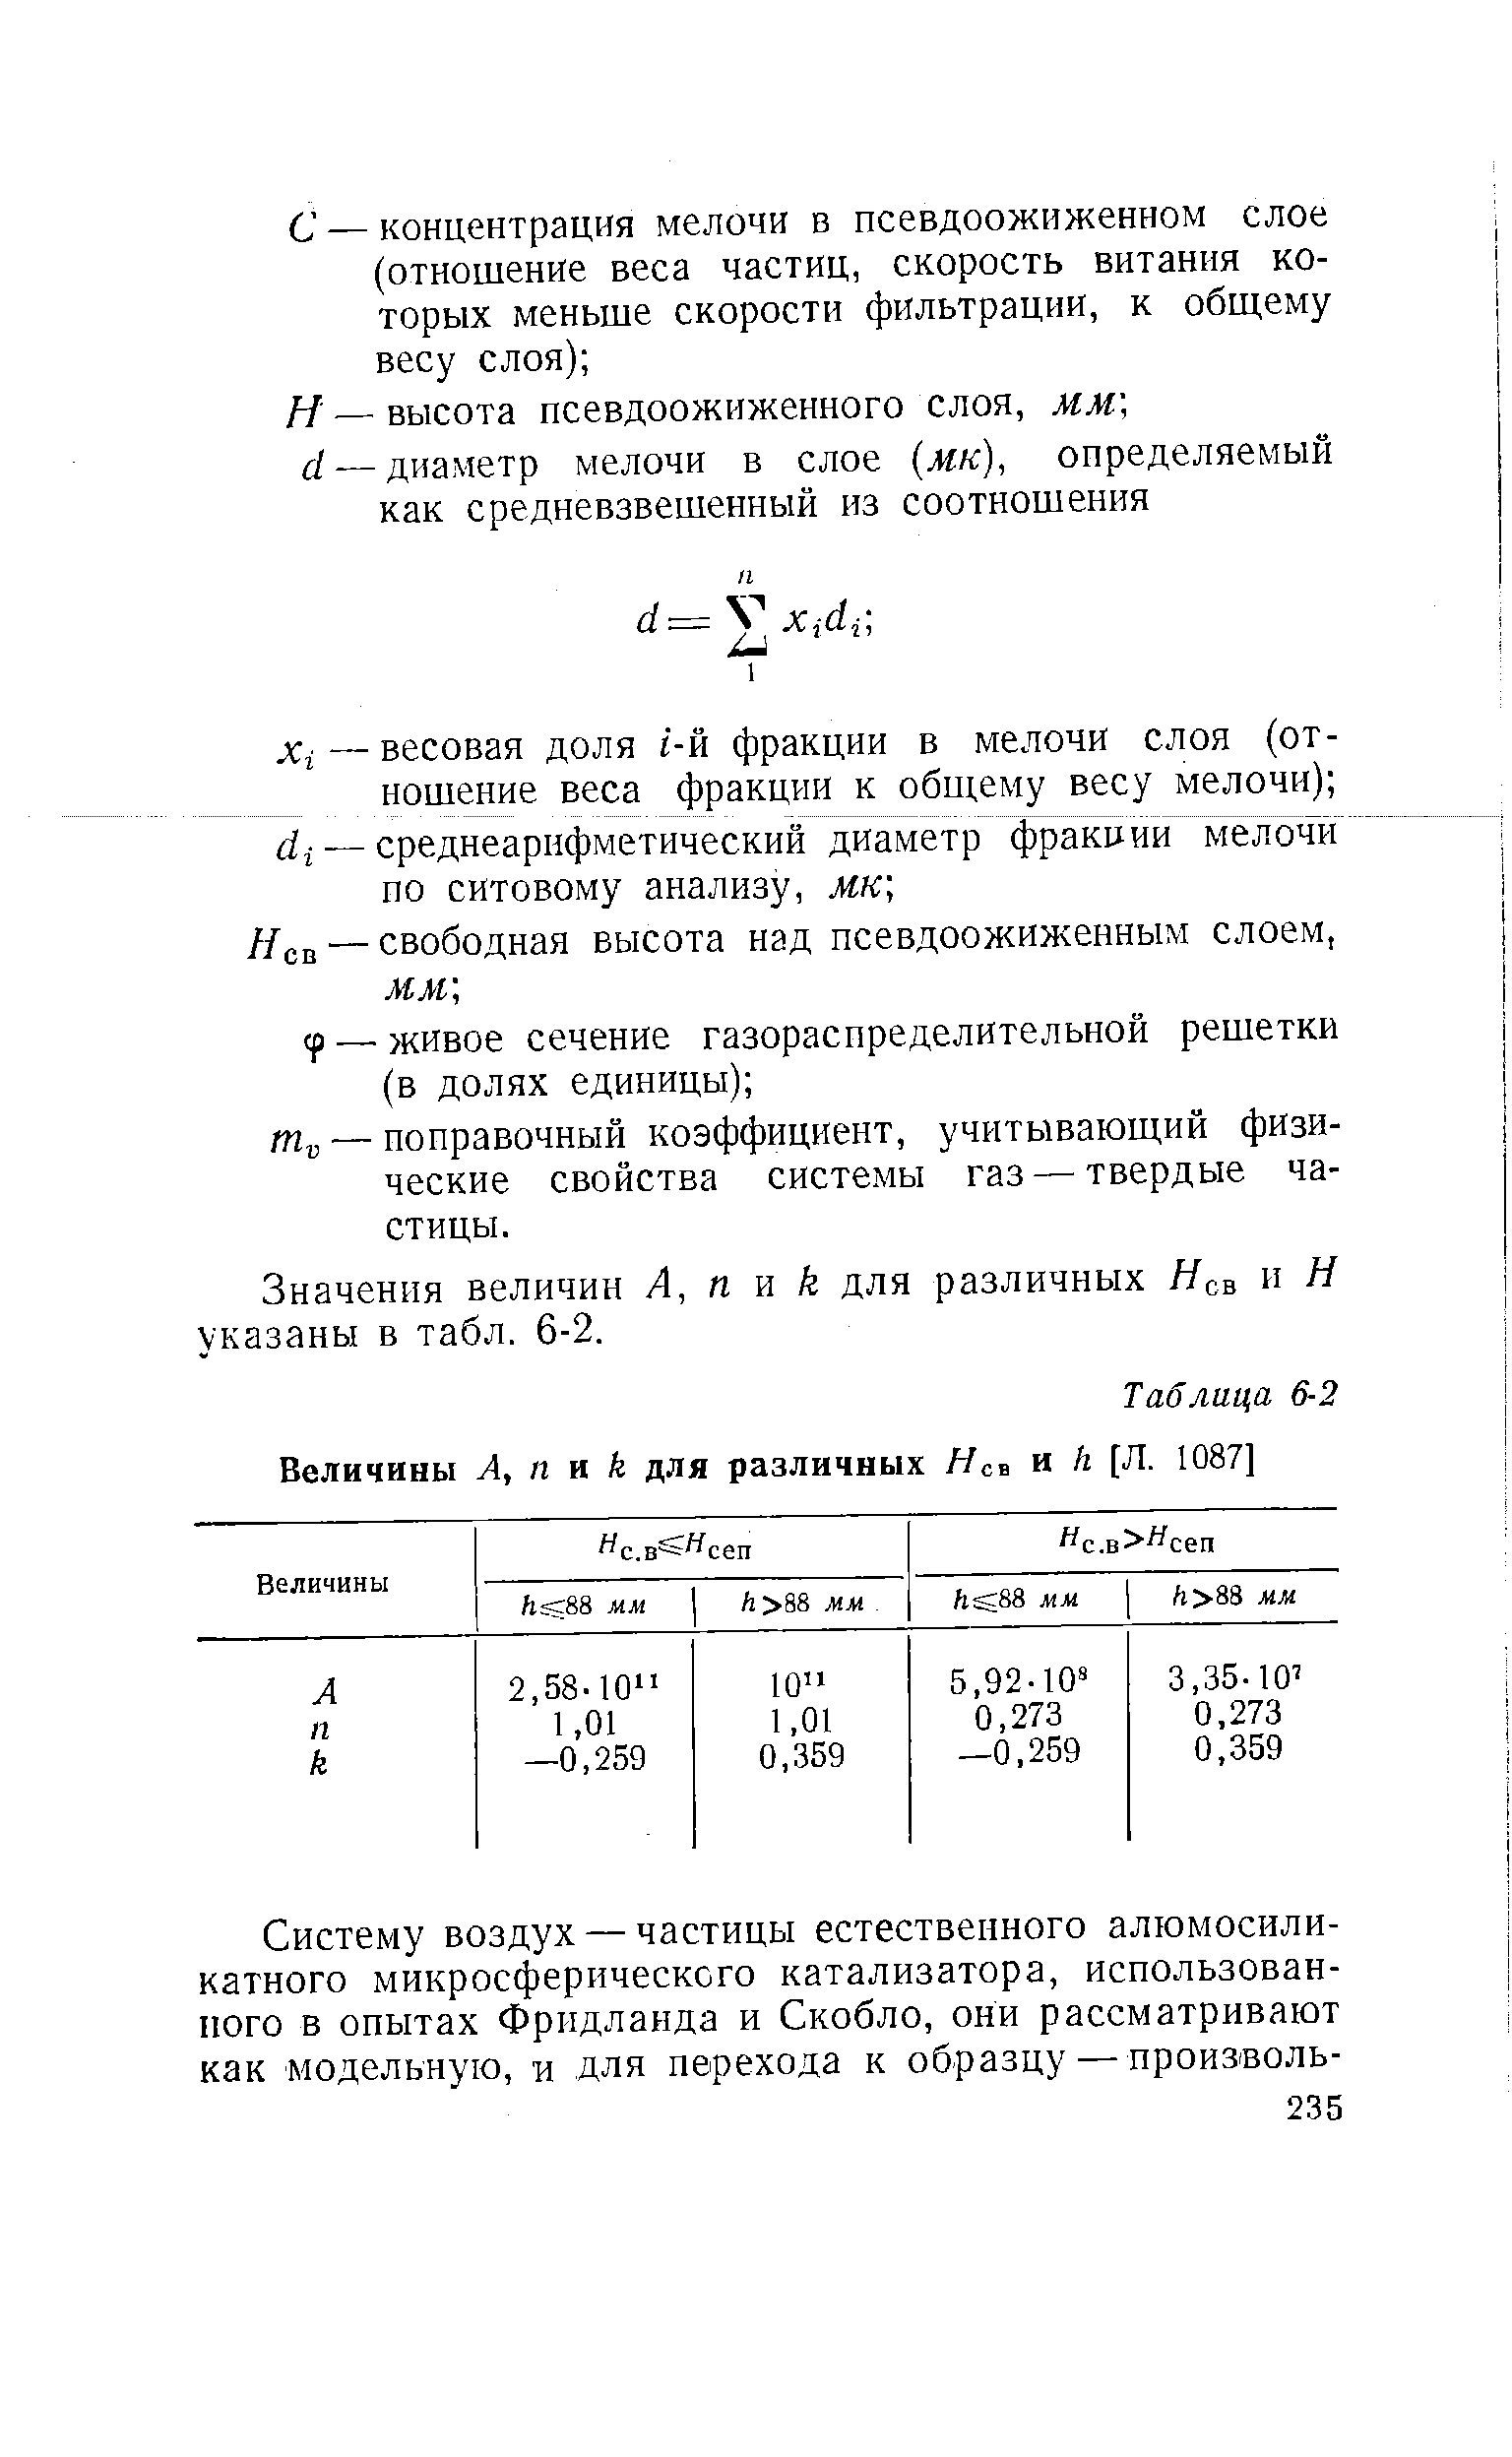 Значения величин А, п k для различных Нсв и Н указаны в табл. 6-2.
